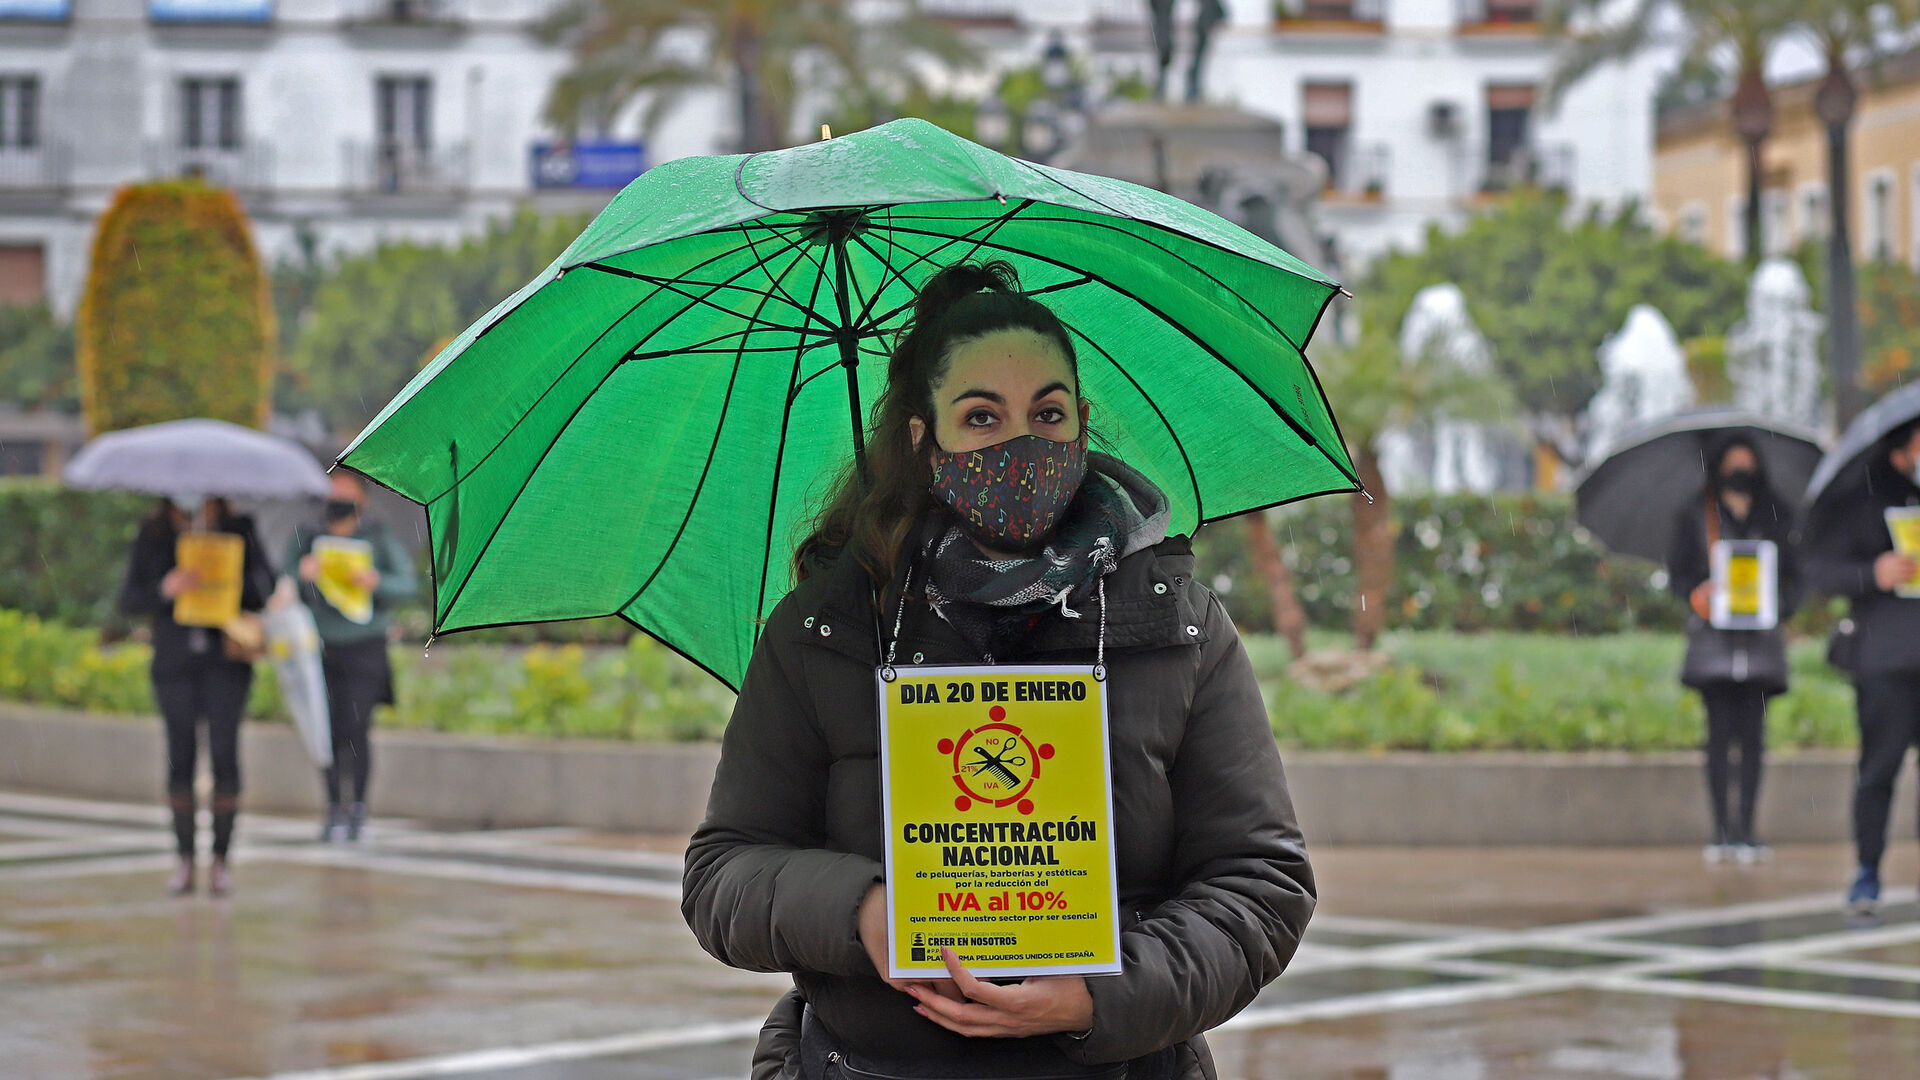 Protesta de las peluquerias en Jerez